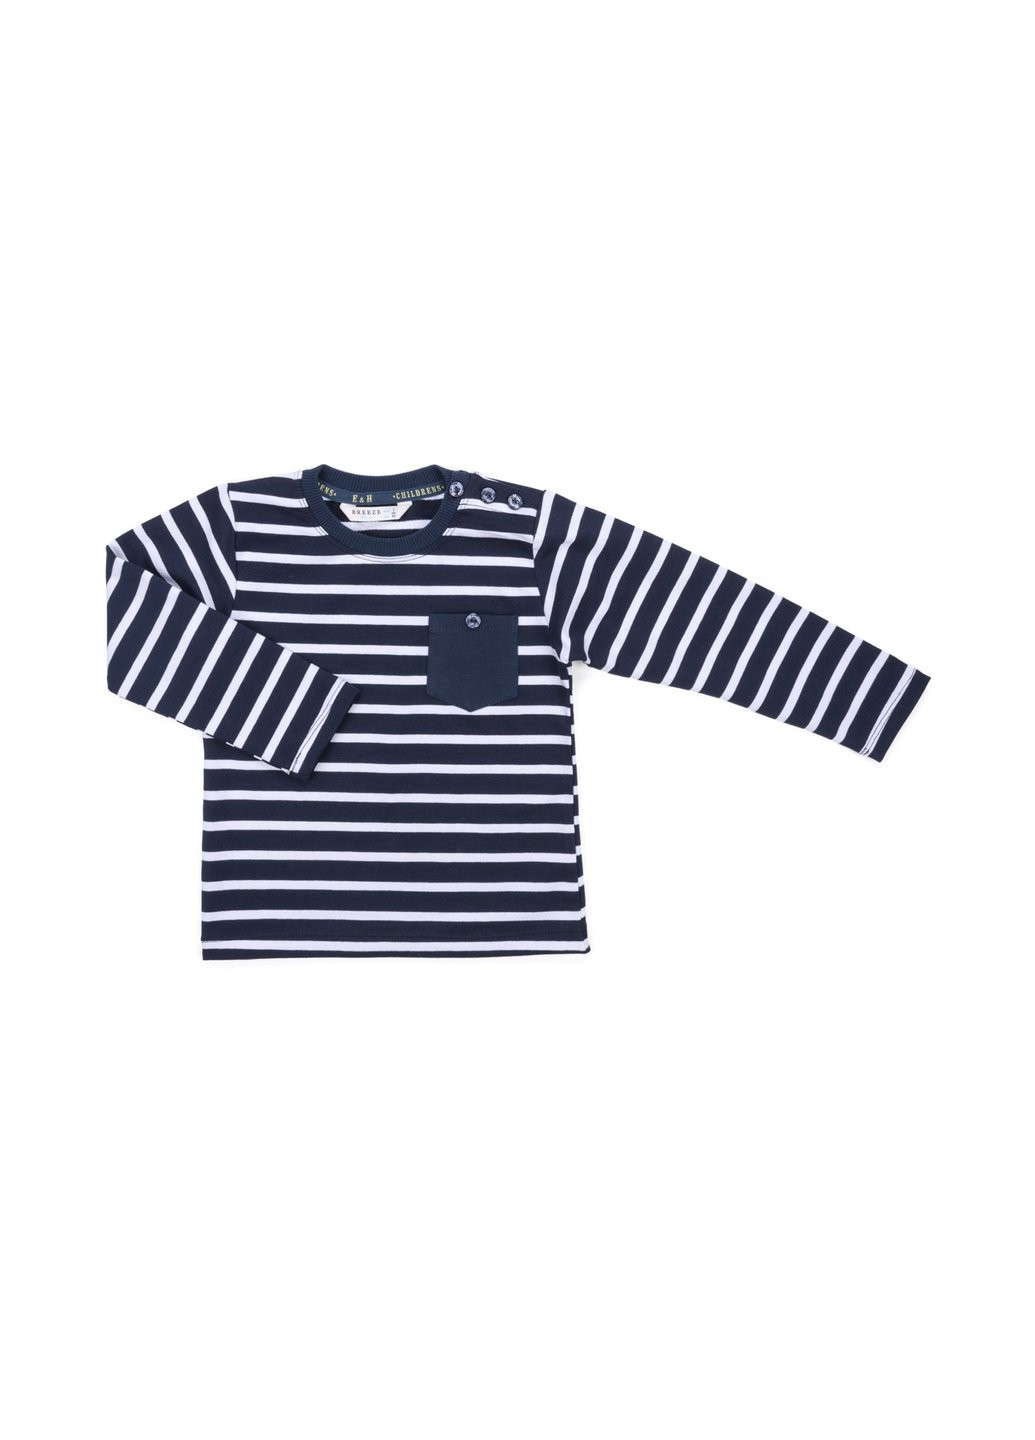 Комбинированный демисезонный набор детской одежды в полосочку и с карманчиком (8999-68b-darkblue) Breeze